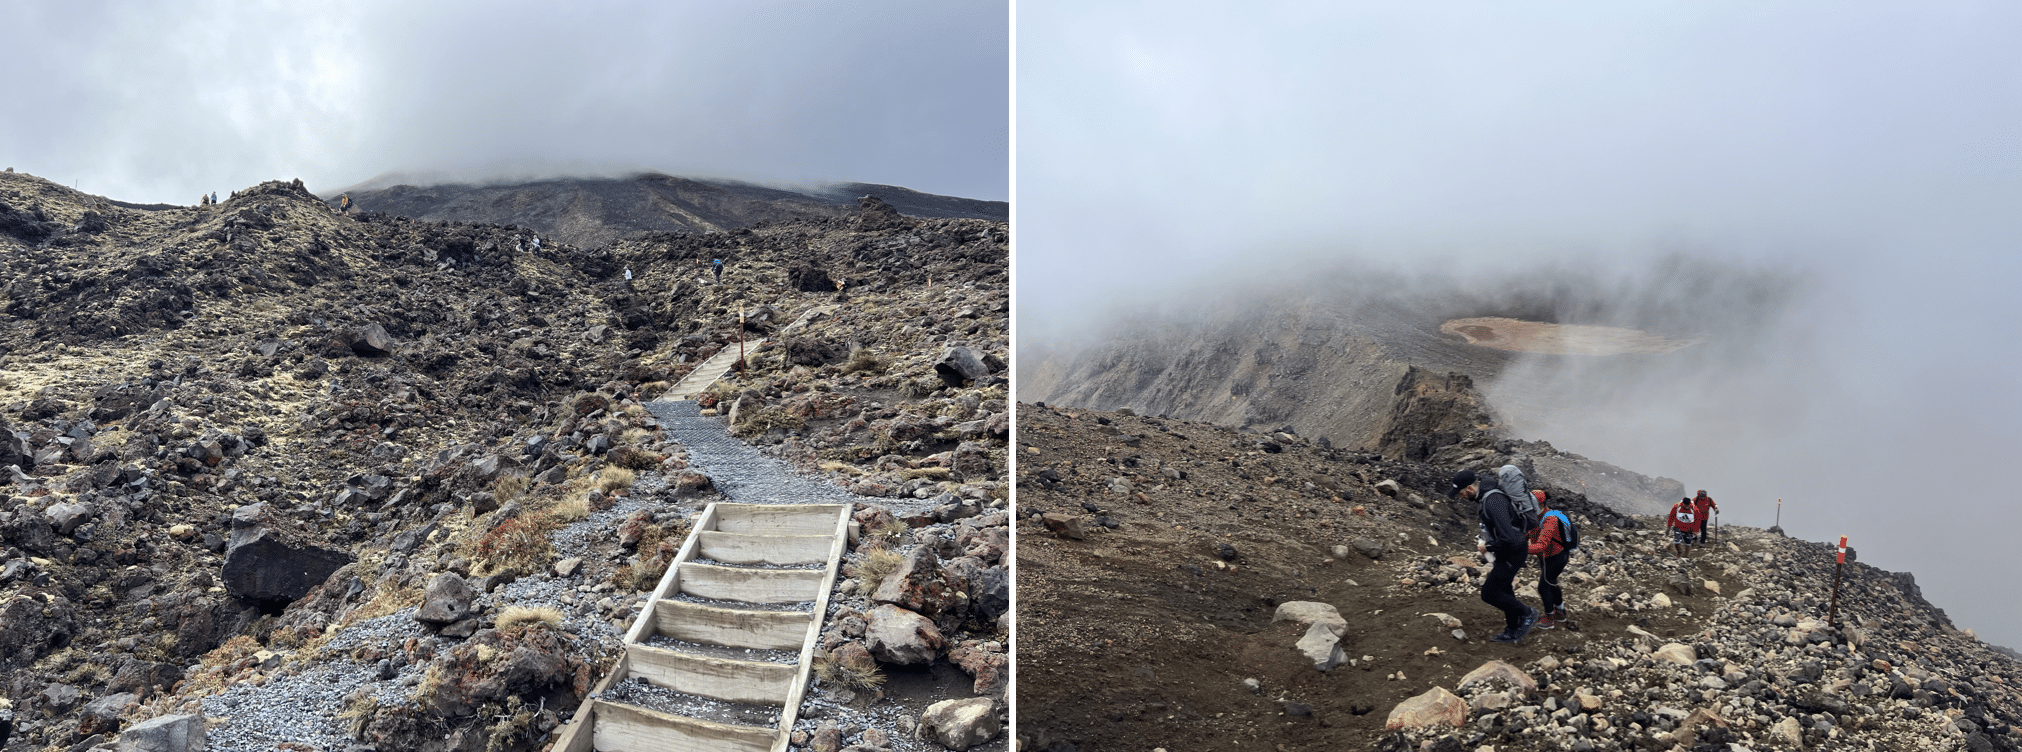 que faire lors d un road trip en nouvelle zelande : la randonnee du tongariro alpine crossing